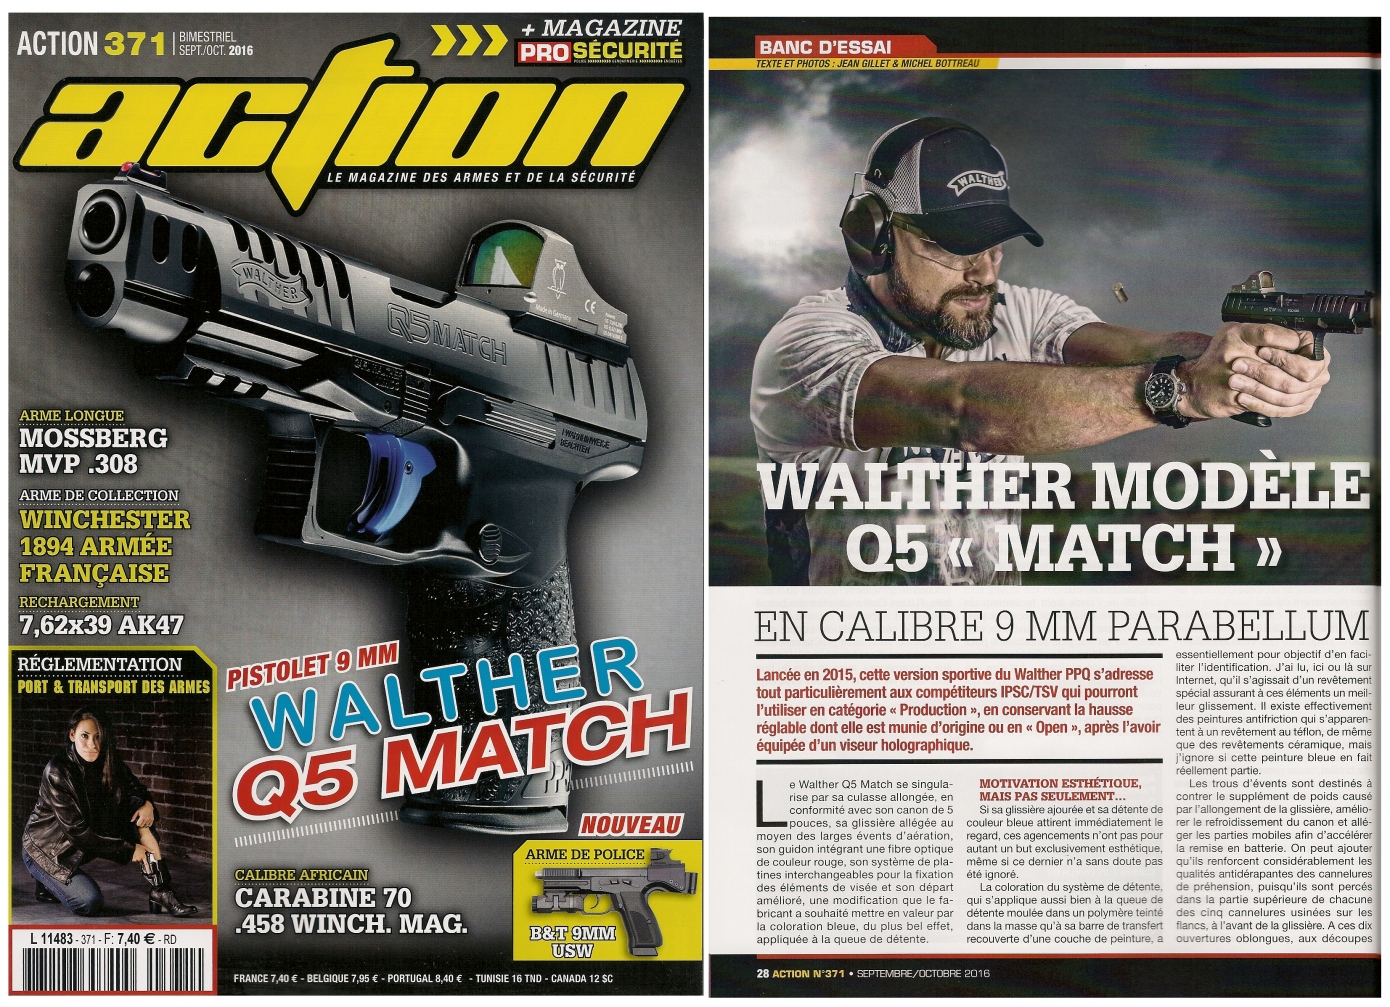 Le banc d’essai du pistolet Walther modèle Q5 Match a été publié sur 6 pages dans le magazine Action n°371 (septembre-octobre 2016).